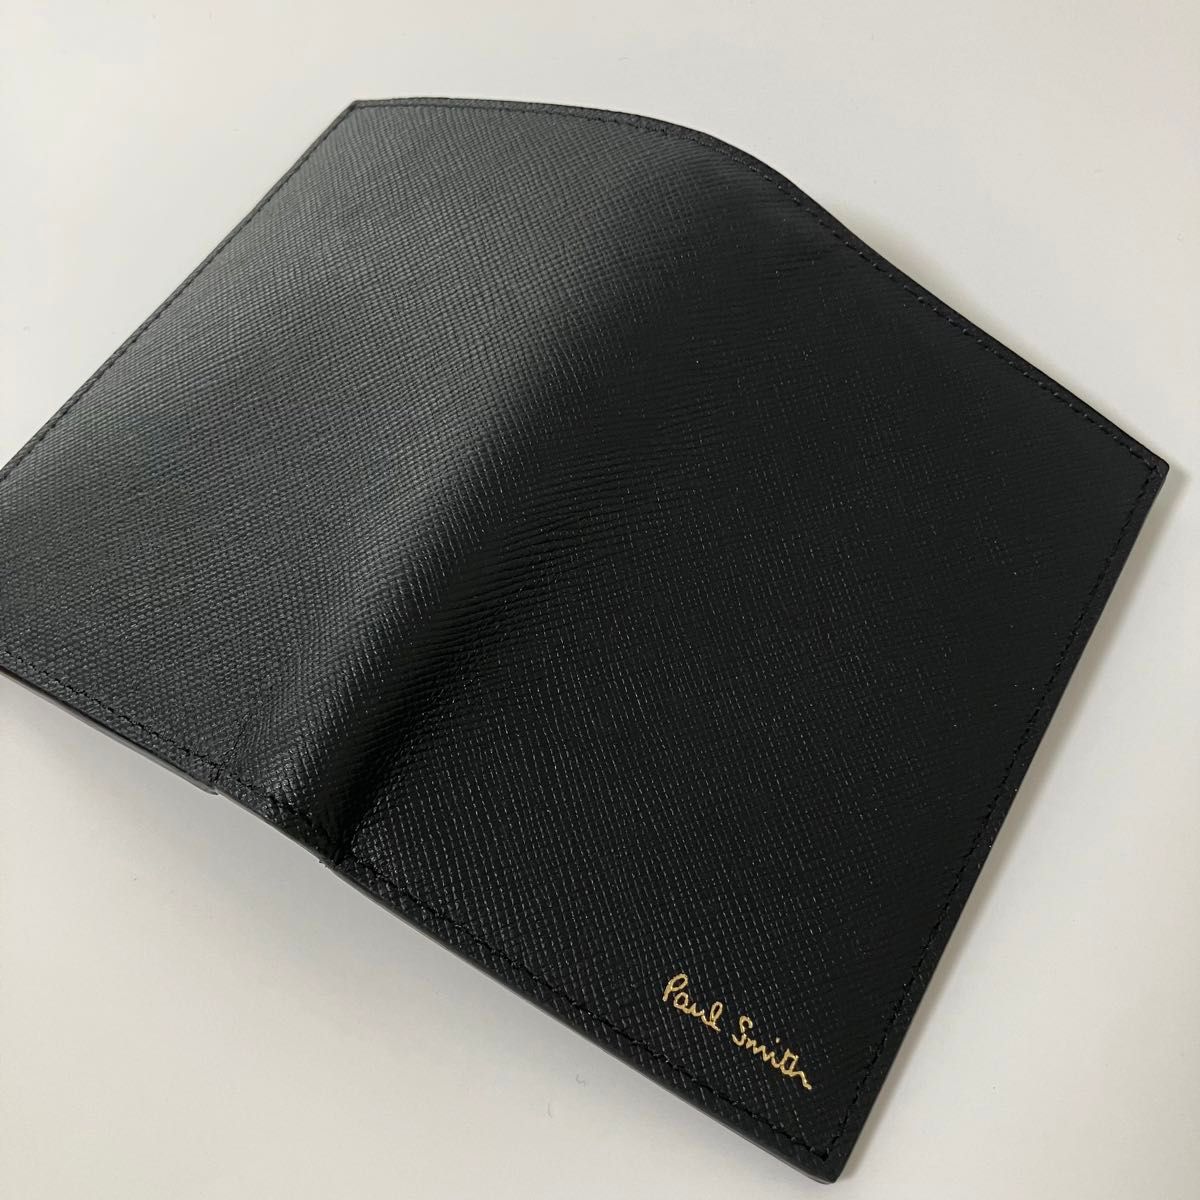 新品 Paul Smith ポールスミス 二つ折り ミニ札財布 黒 イタリア製 ブラック レザー シンプル ビジネス カードケース